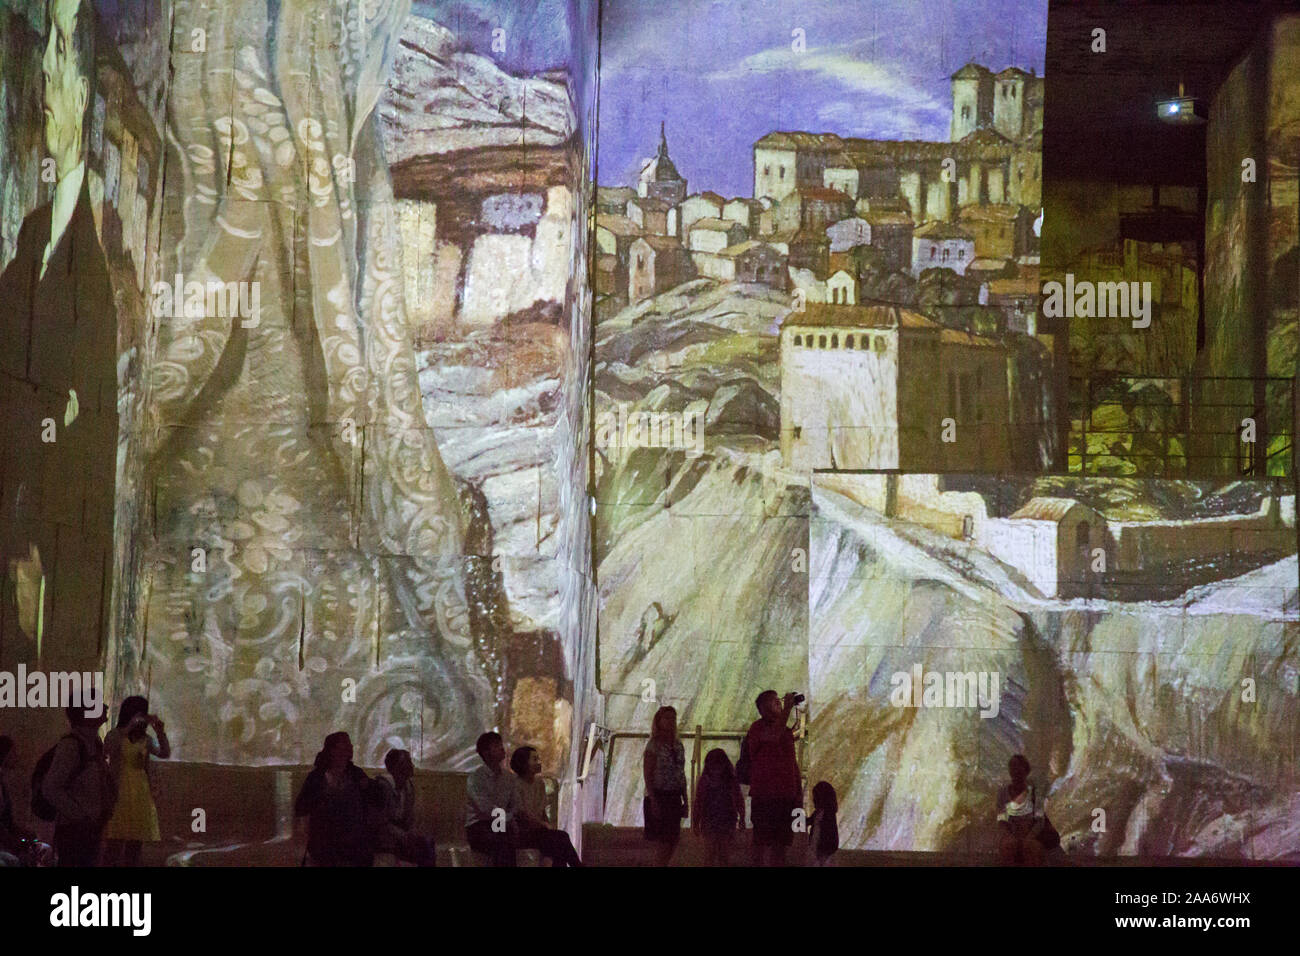 La presentazione multimediale vettori de Lumieres proietta immagini in una vecchia cava di bauxite in Les Baux Provence in Francia Foto Stock